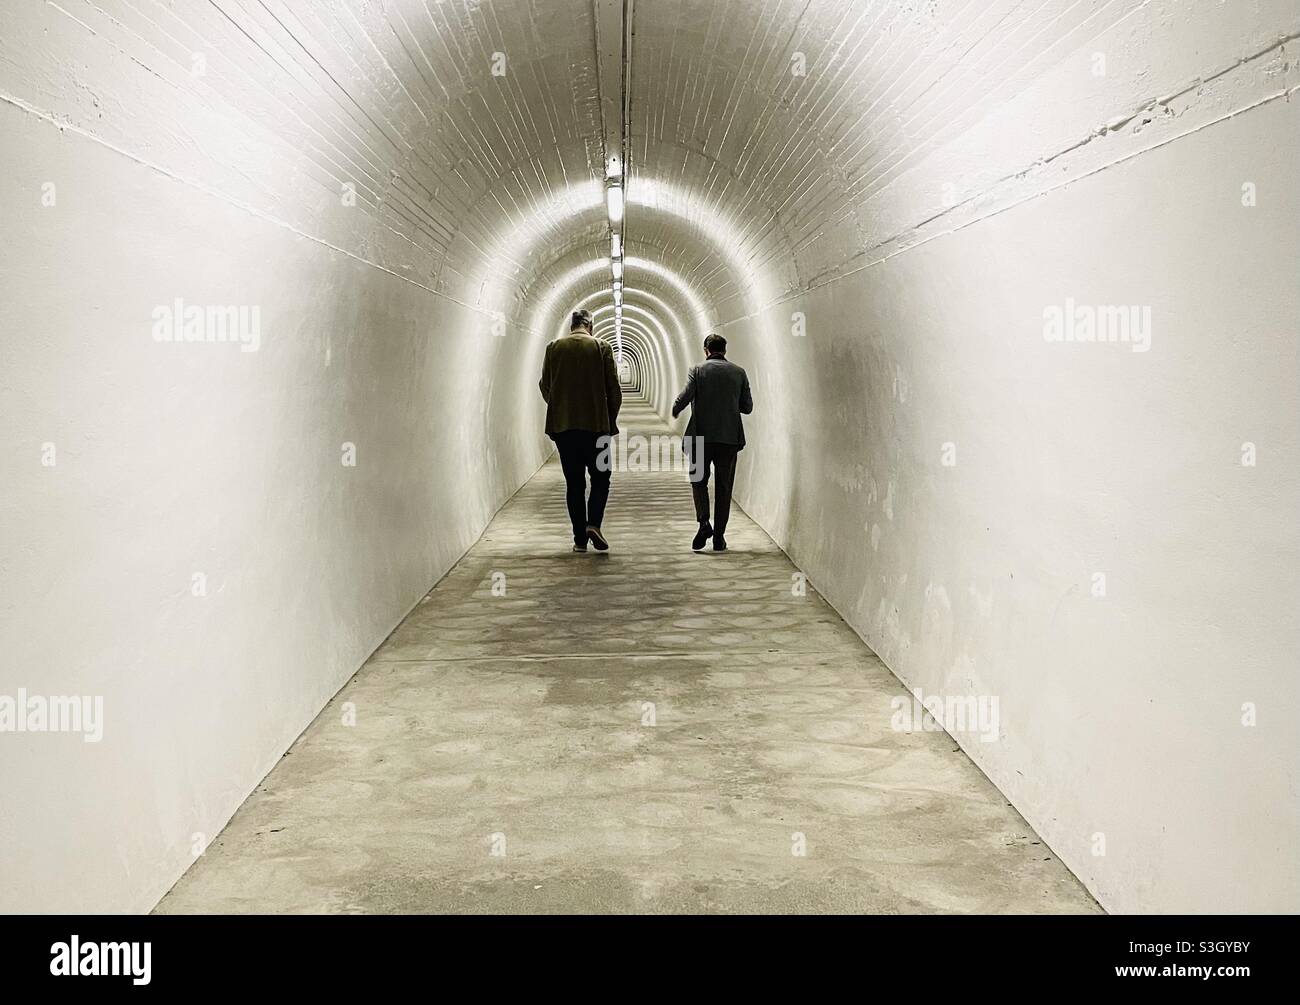 Der Tunnel, der zum Durie Hill Lift in Whanganui Neuseeland führt Stockfoto